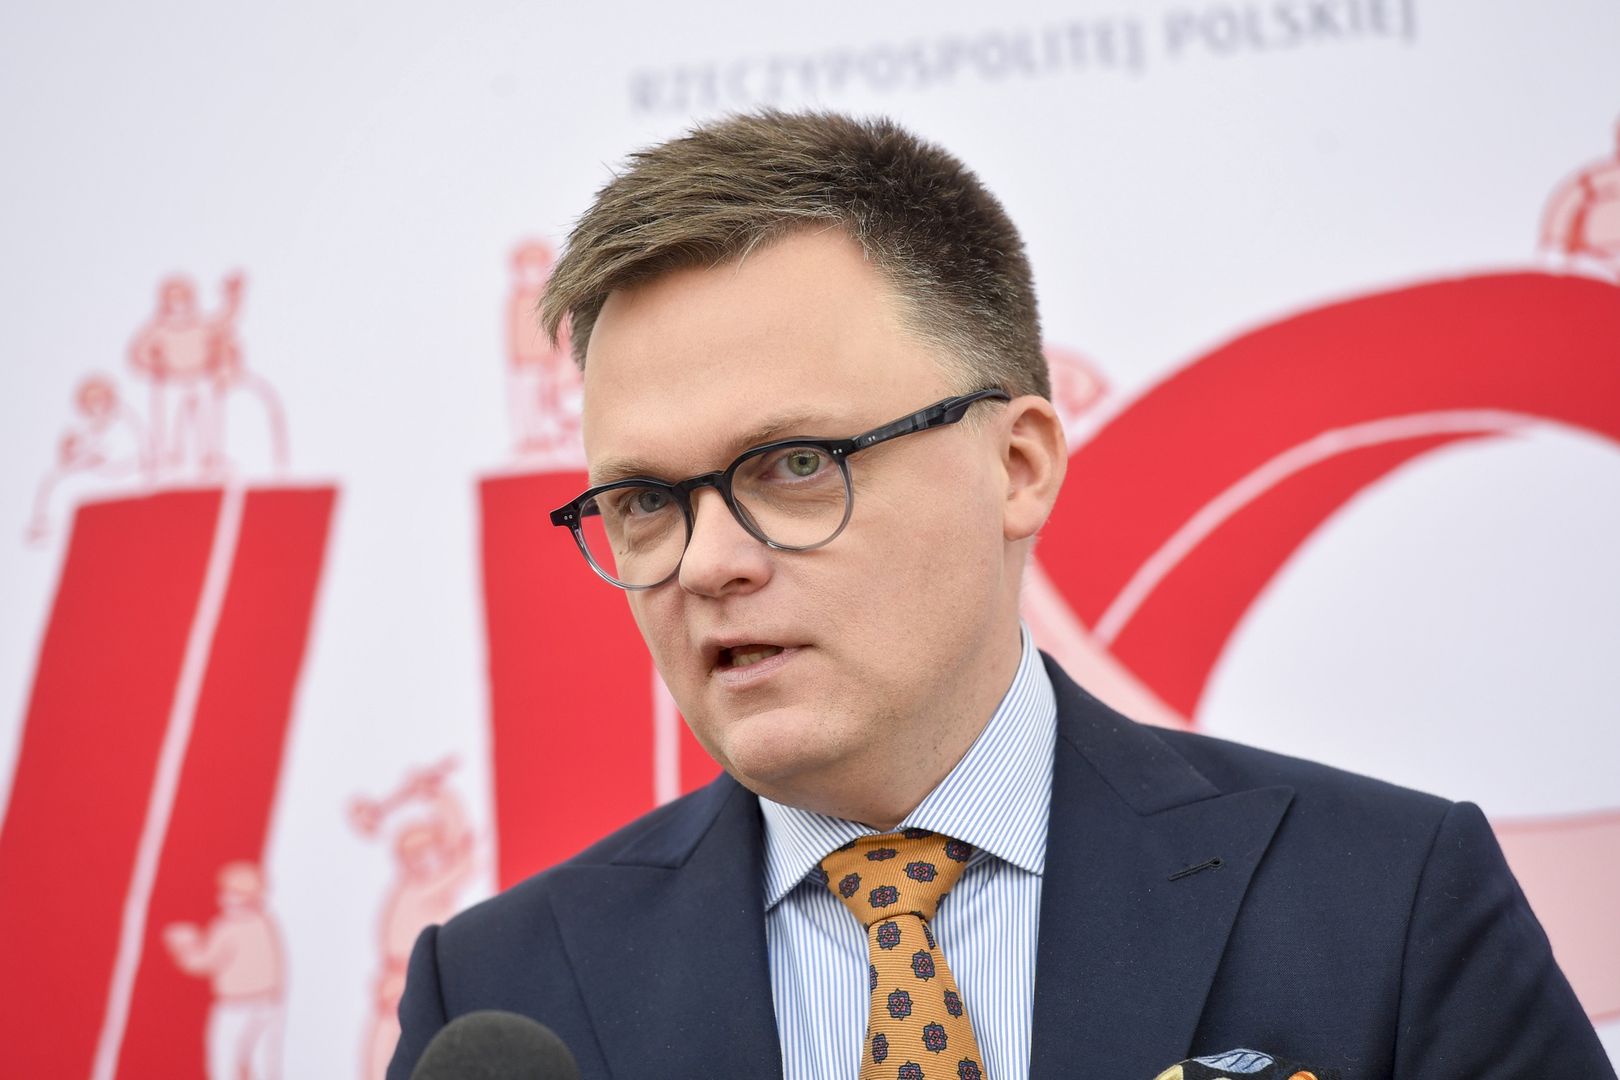 Szymon Hołownia zapowiada przebudowę partii. "Poradzimy sobie z tym"